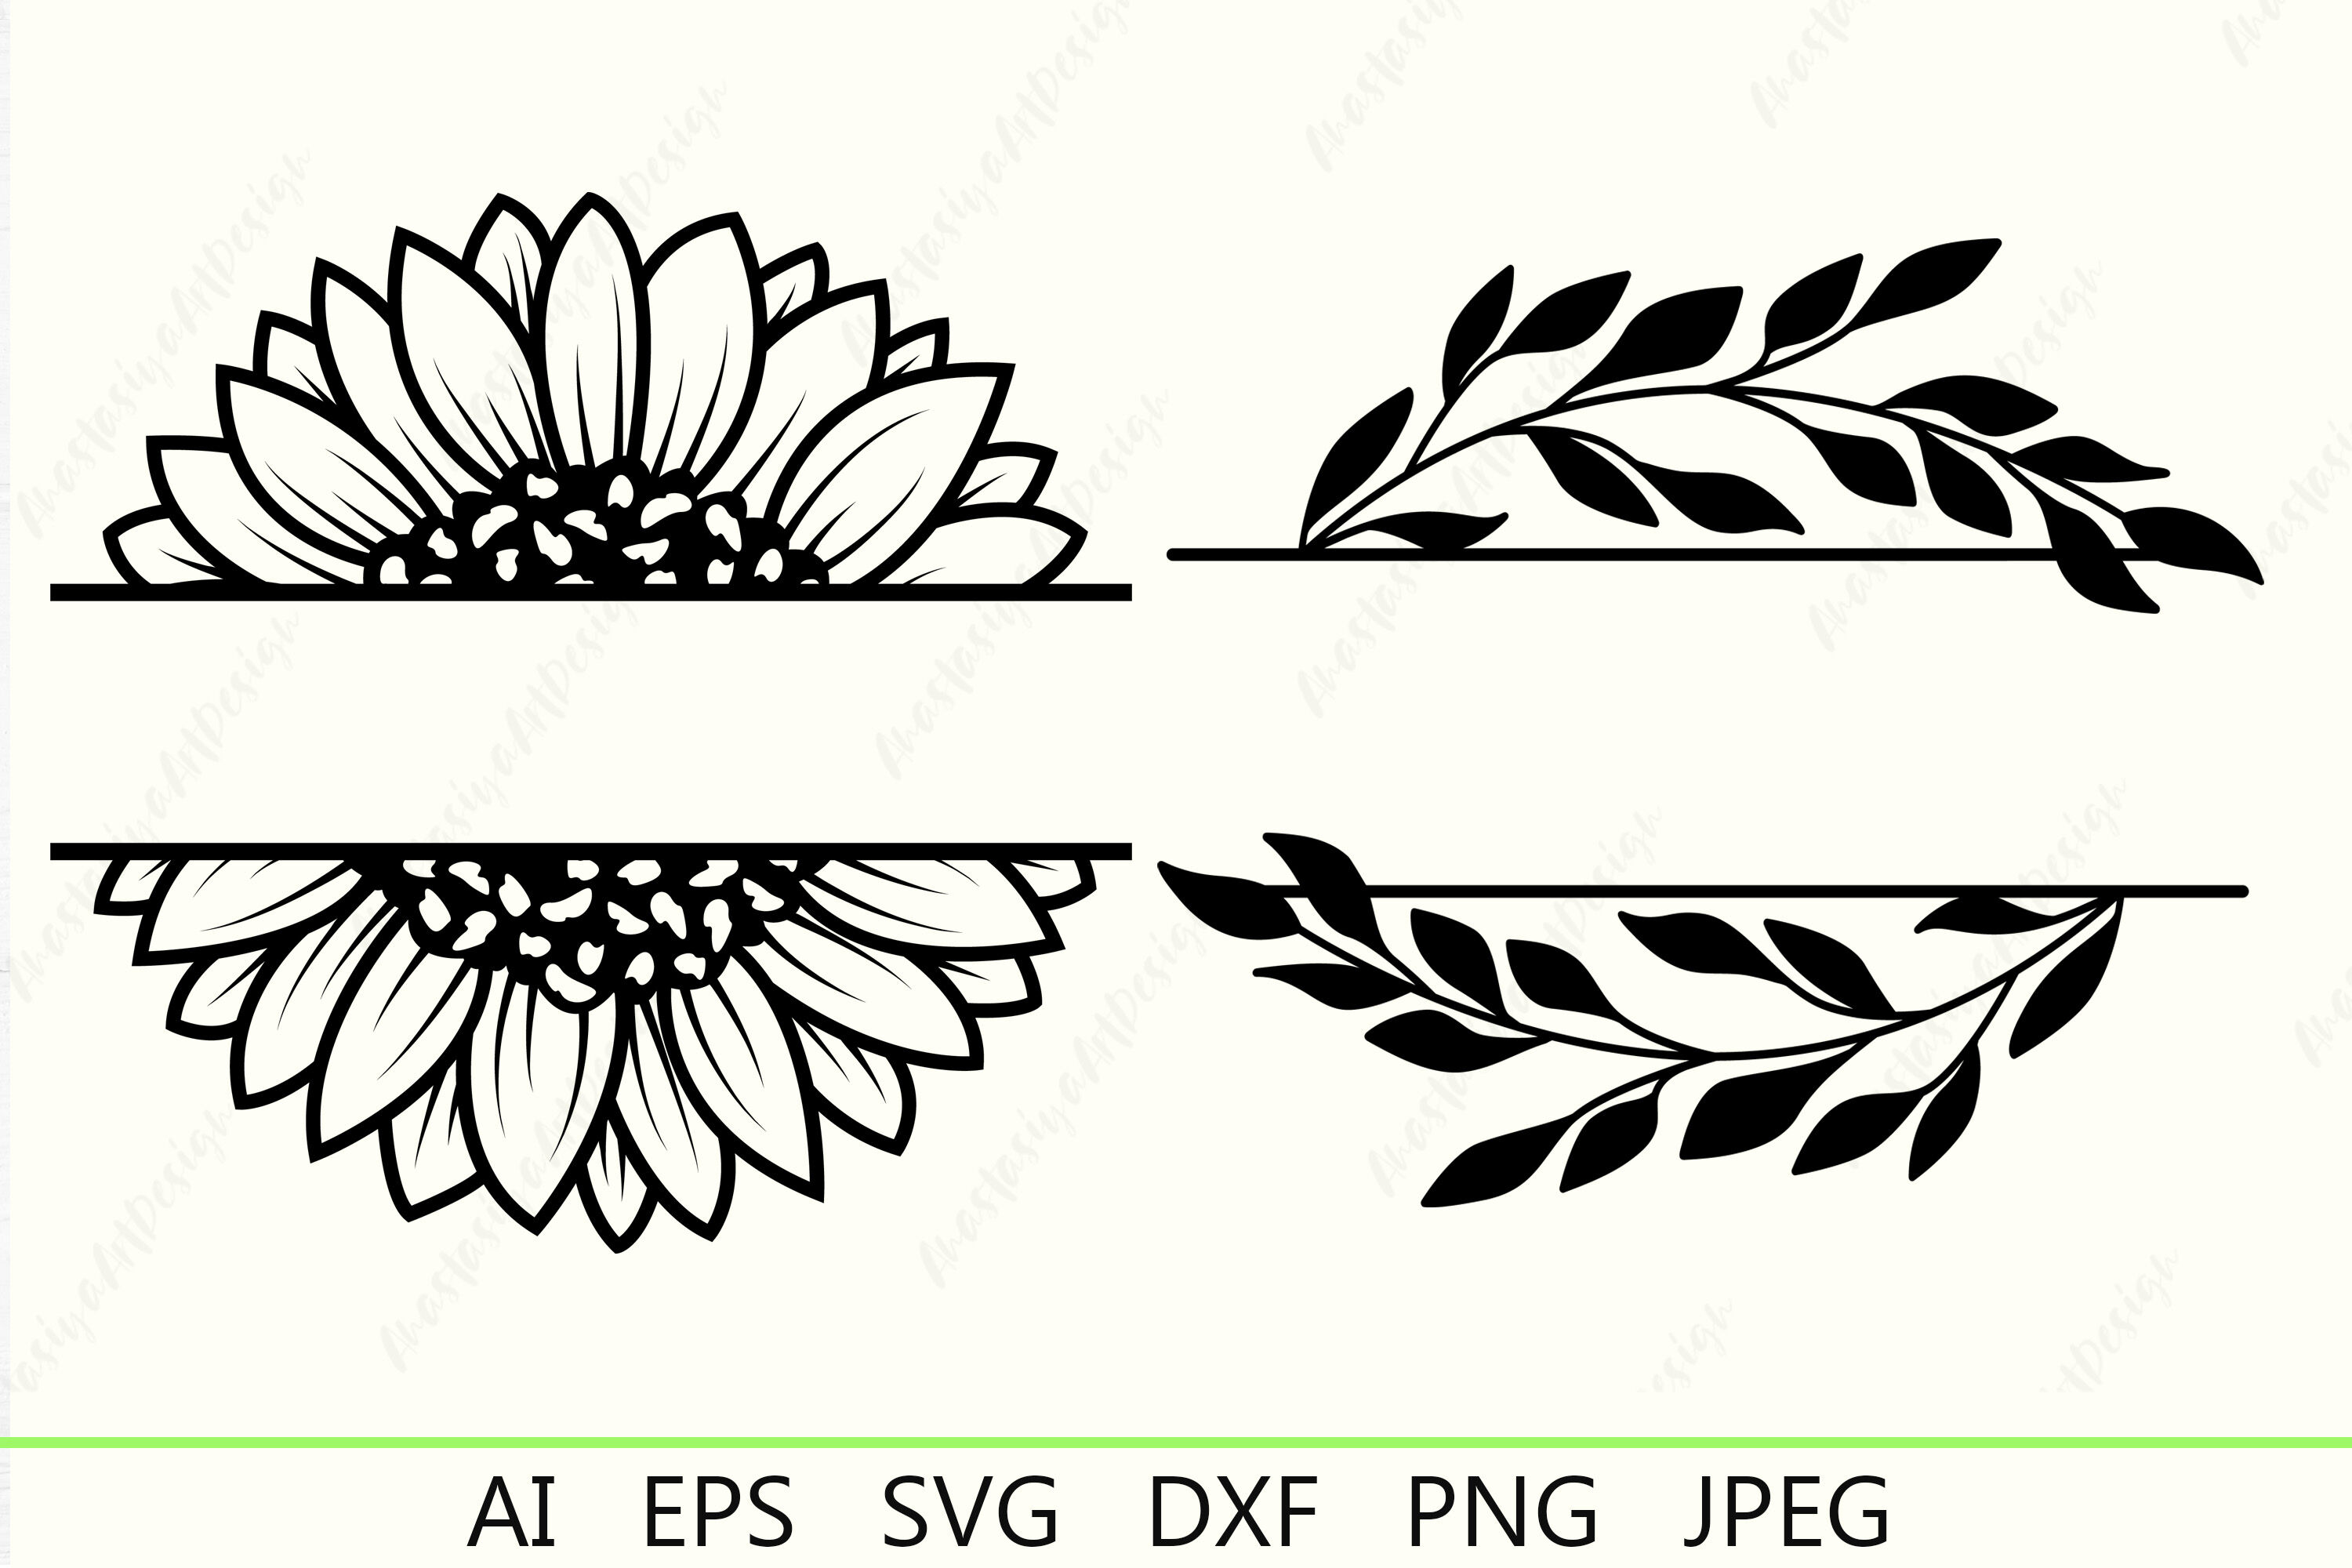 Sunflower split monogram frame SVG cut file,Floral frame svg